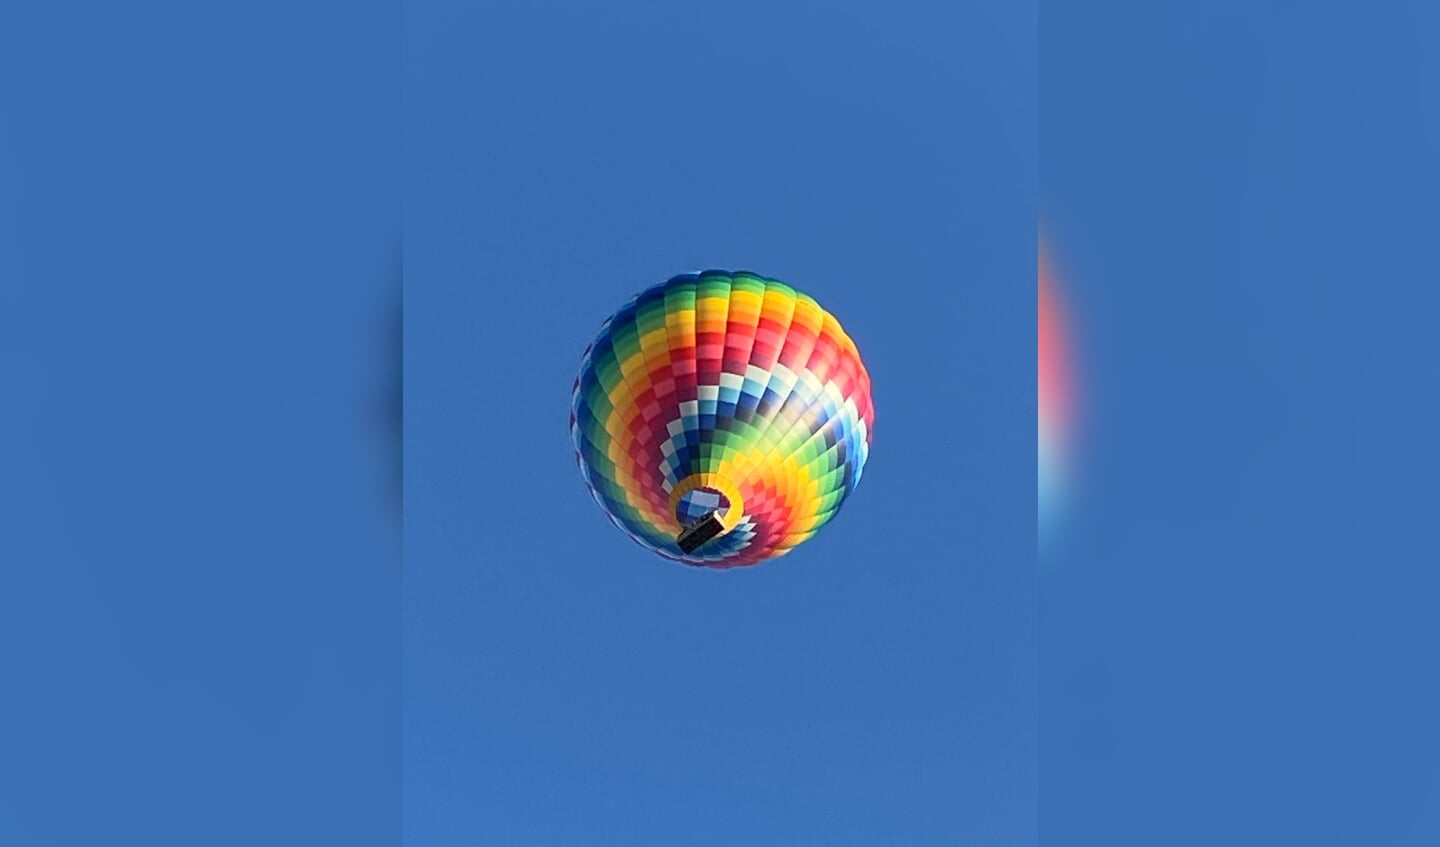 Deze luchtballon vloog vlak boven mij op 1 juli in Driebergen op de Engelenburg. Wat een kleurenfeestje!